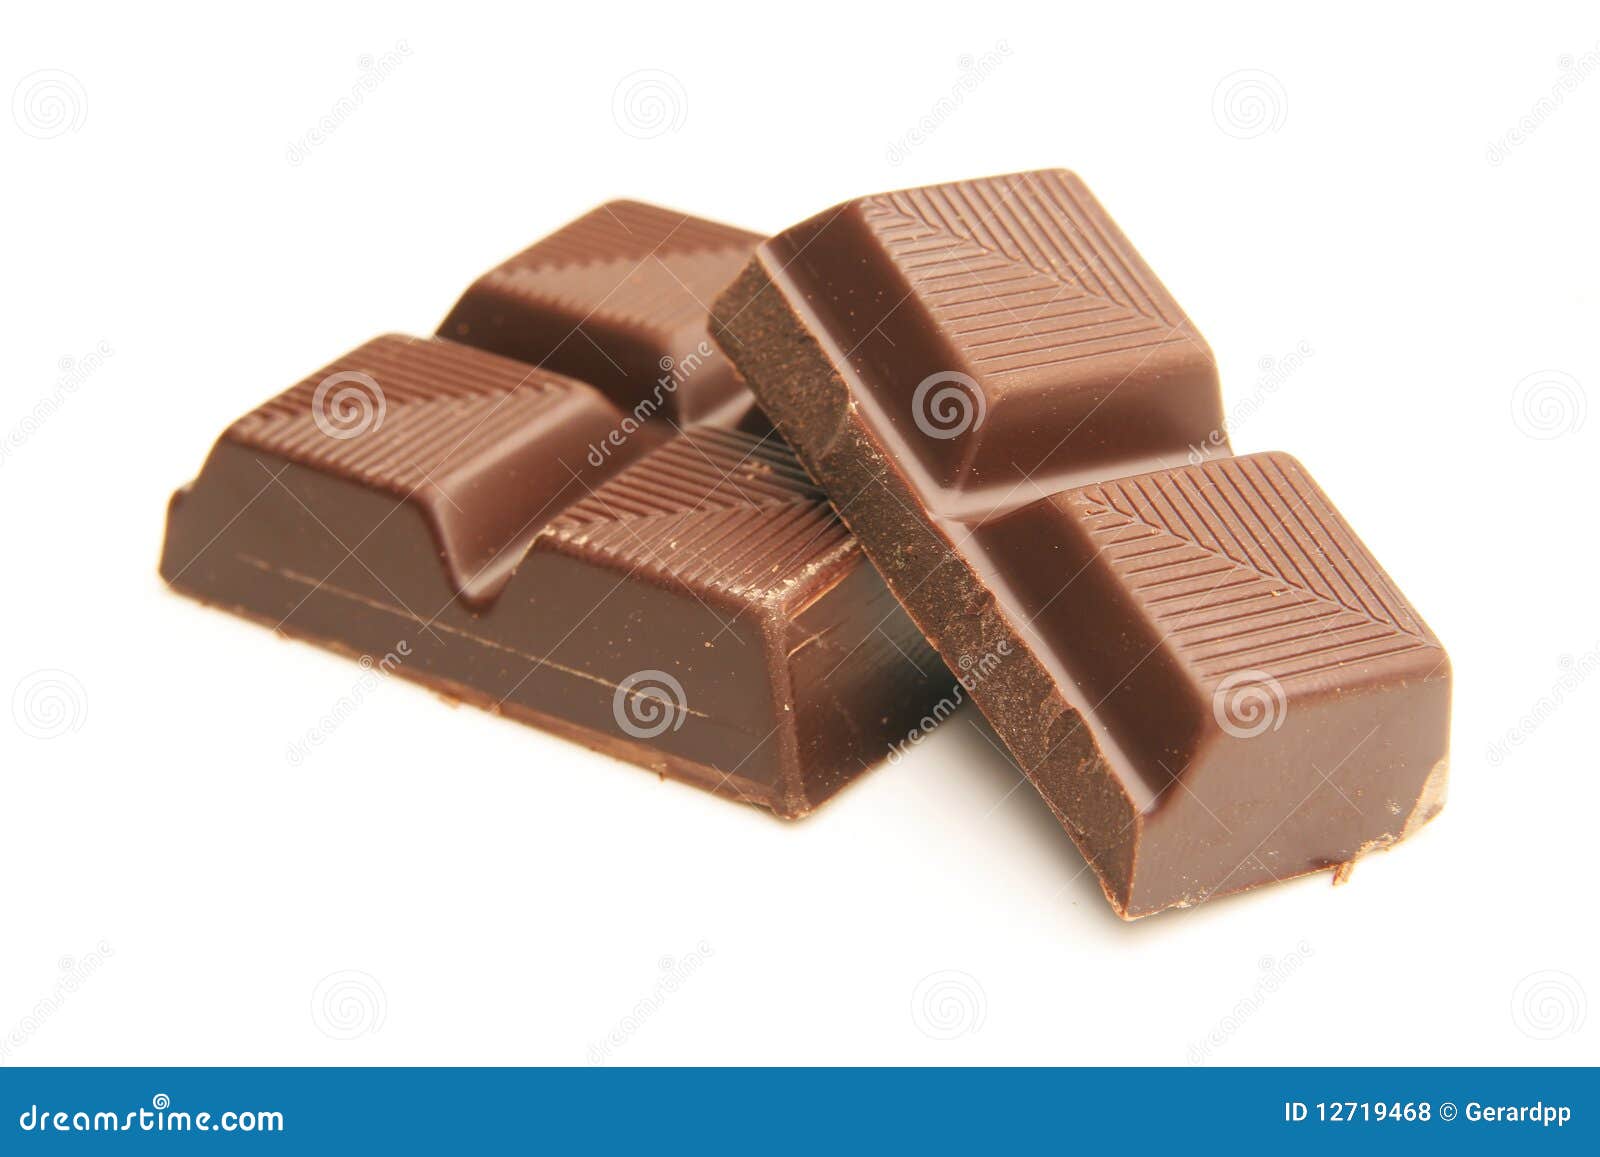 1 кусочек шоколада. Шоколад. Молочный шоколад. Кусочки шоколада. Кусок шоколада.